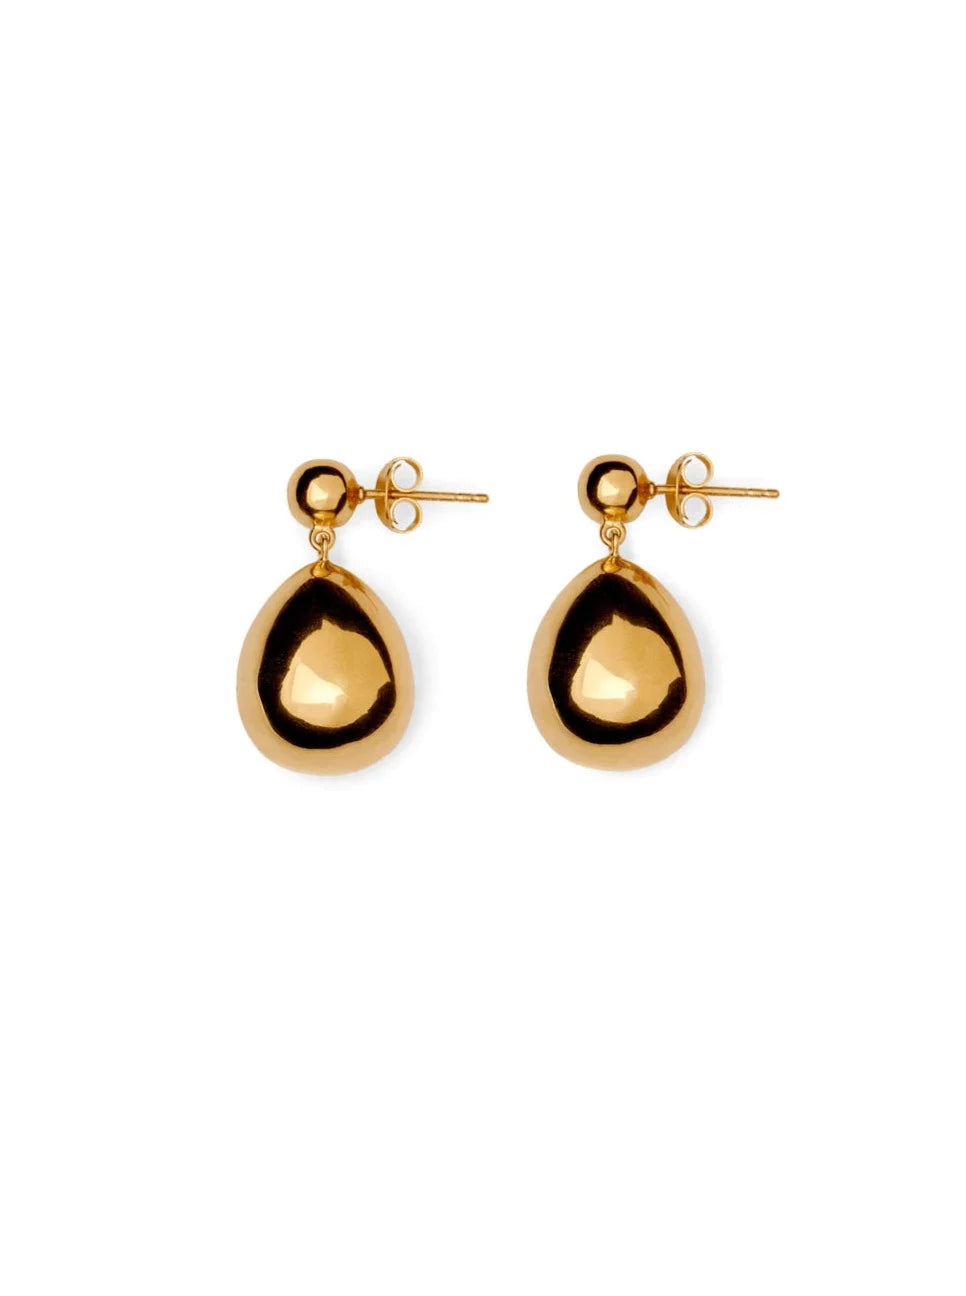 Julie earrings, gold